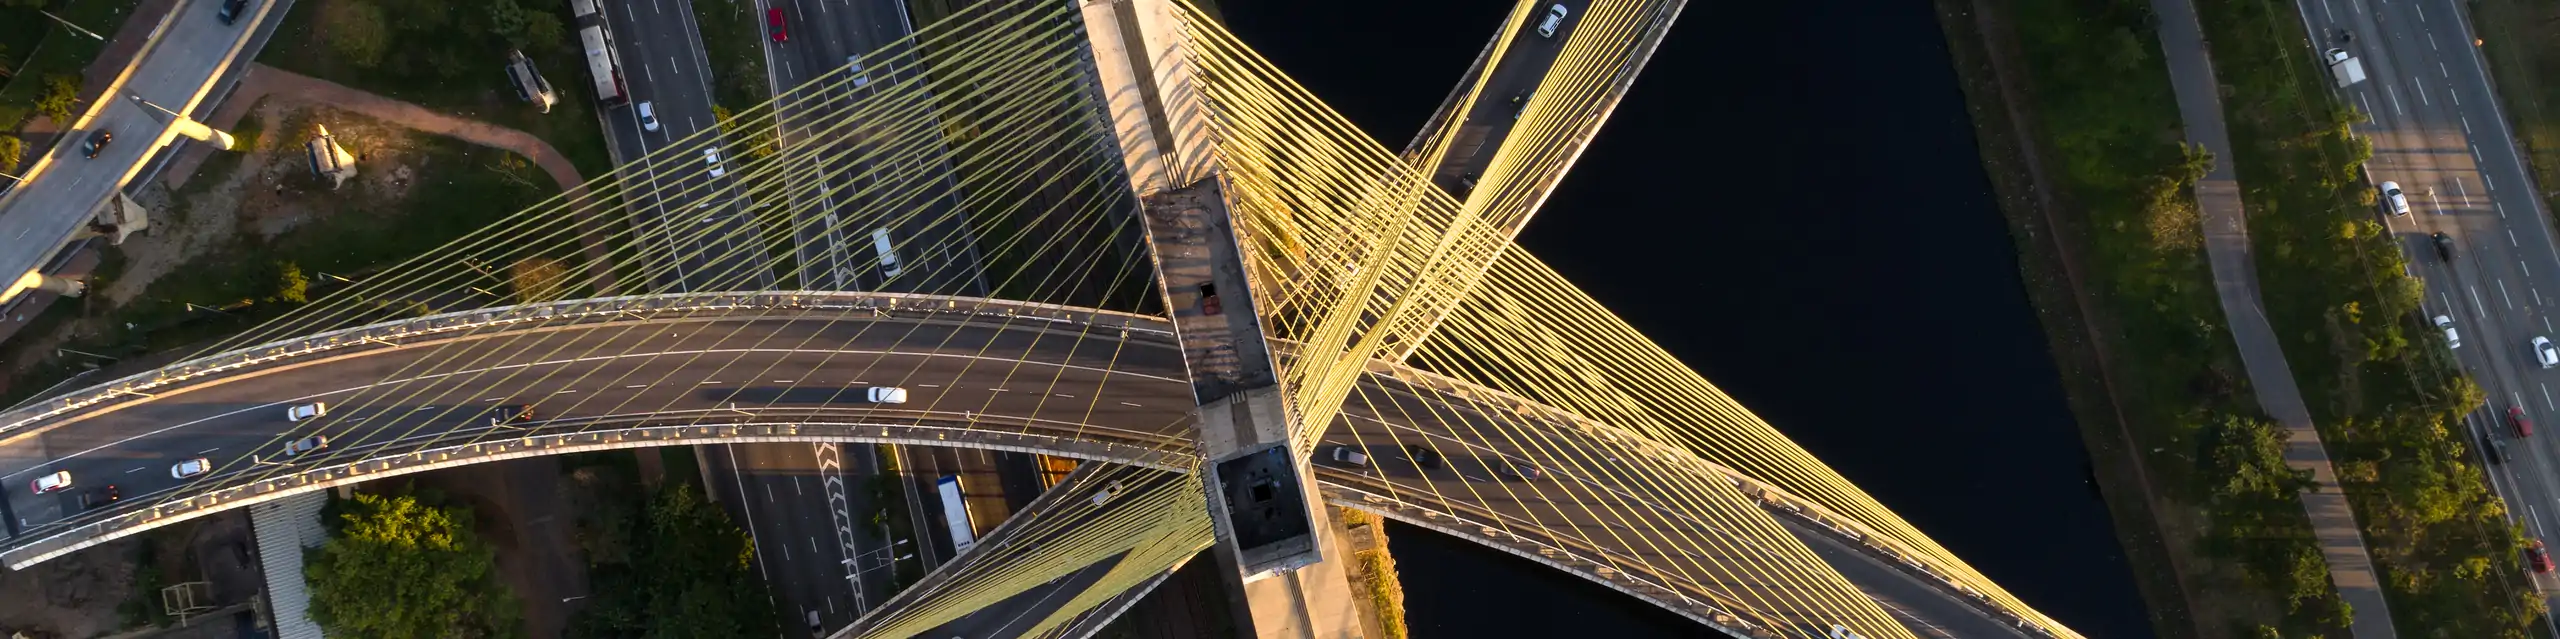 Estaiada Bridge in Sao Paulo, Brazil.